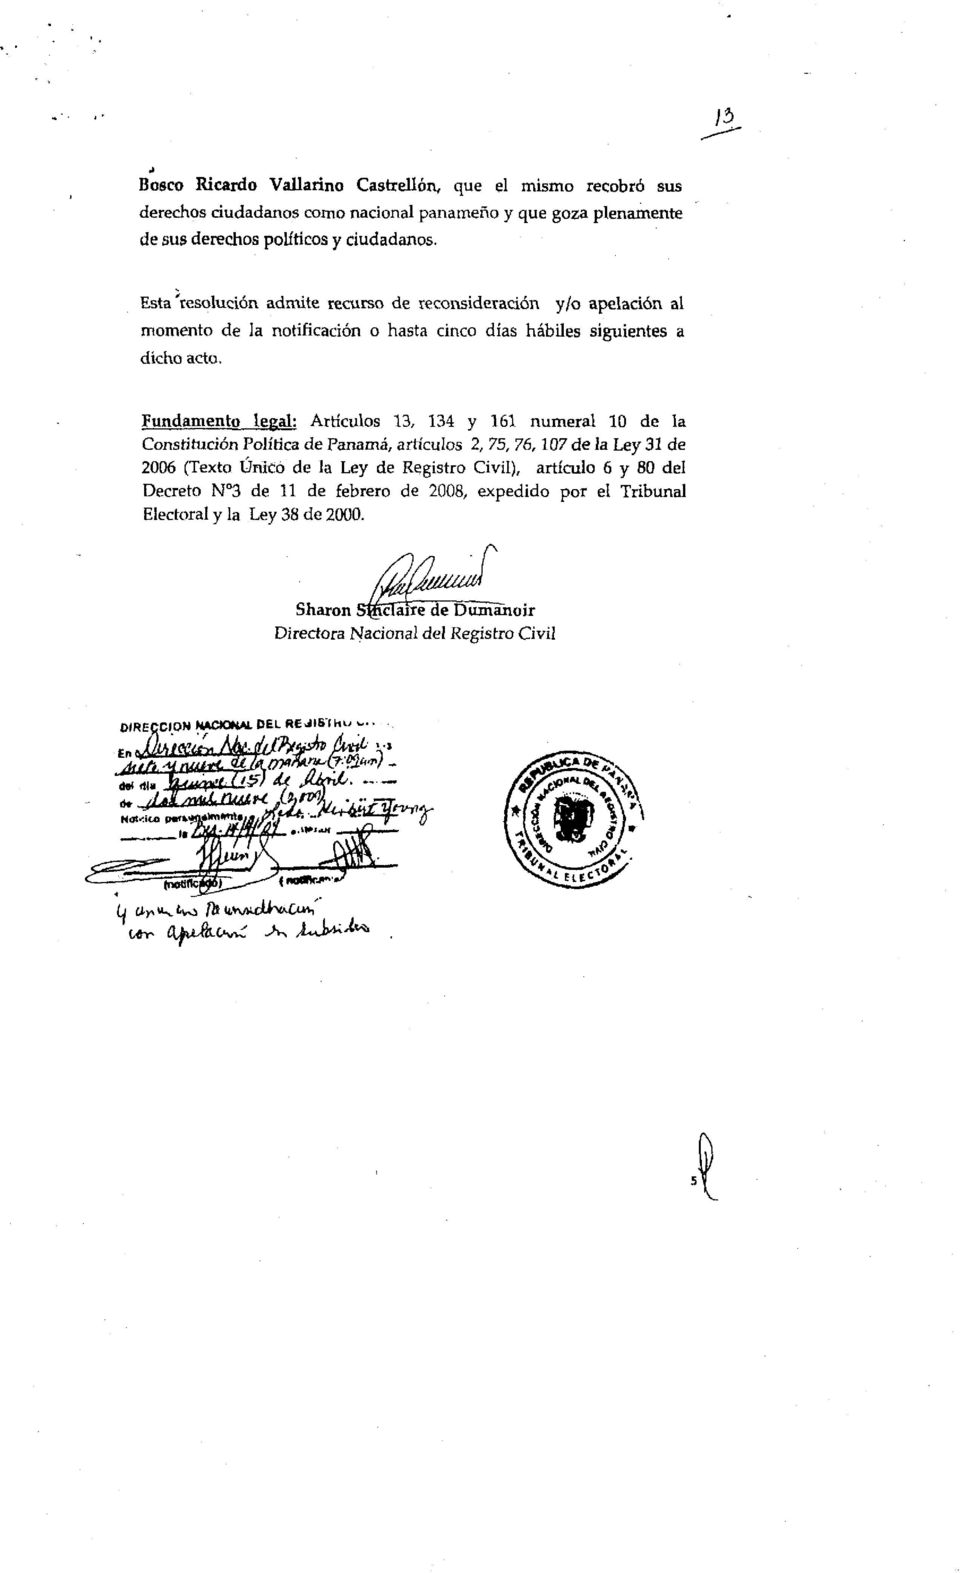 Fundamento legal: Artículos 13, 134 y 161 numeral 10 de la Constitución Política de Panamá, artículos 2, 75, 76,107 de ia Ley 31 de 2006 (Texto Único de la Ley de Registro